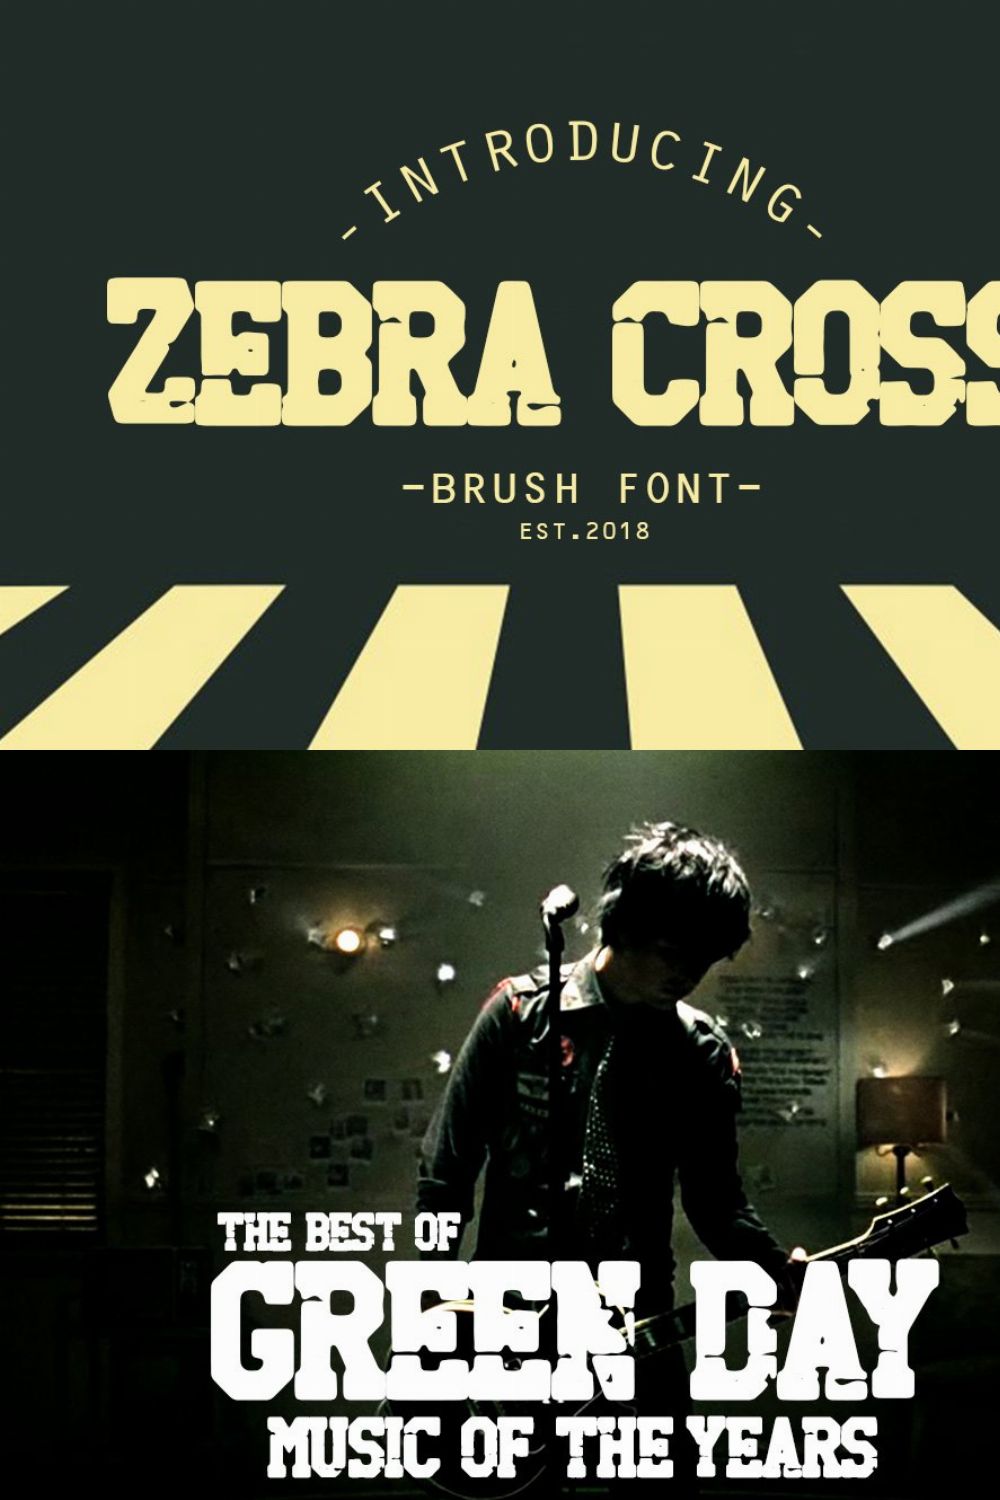 zebra cross brush font pinterest preview image.